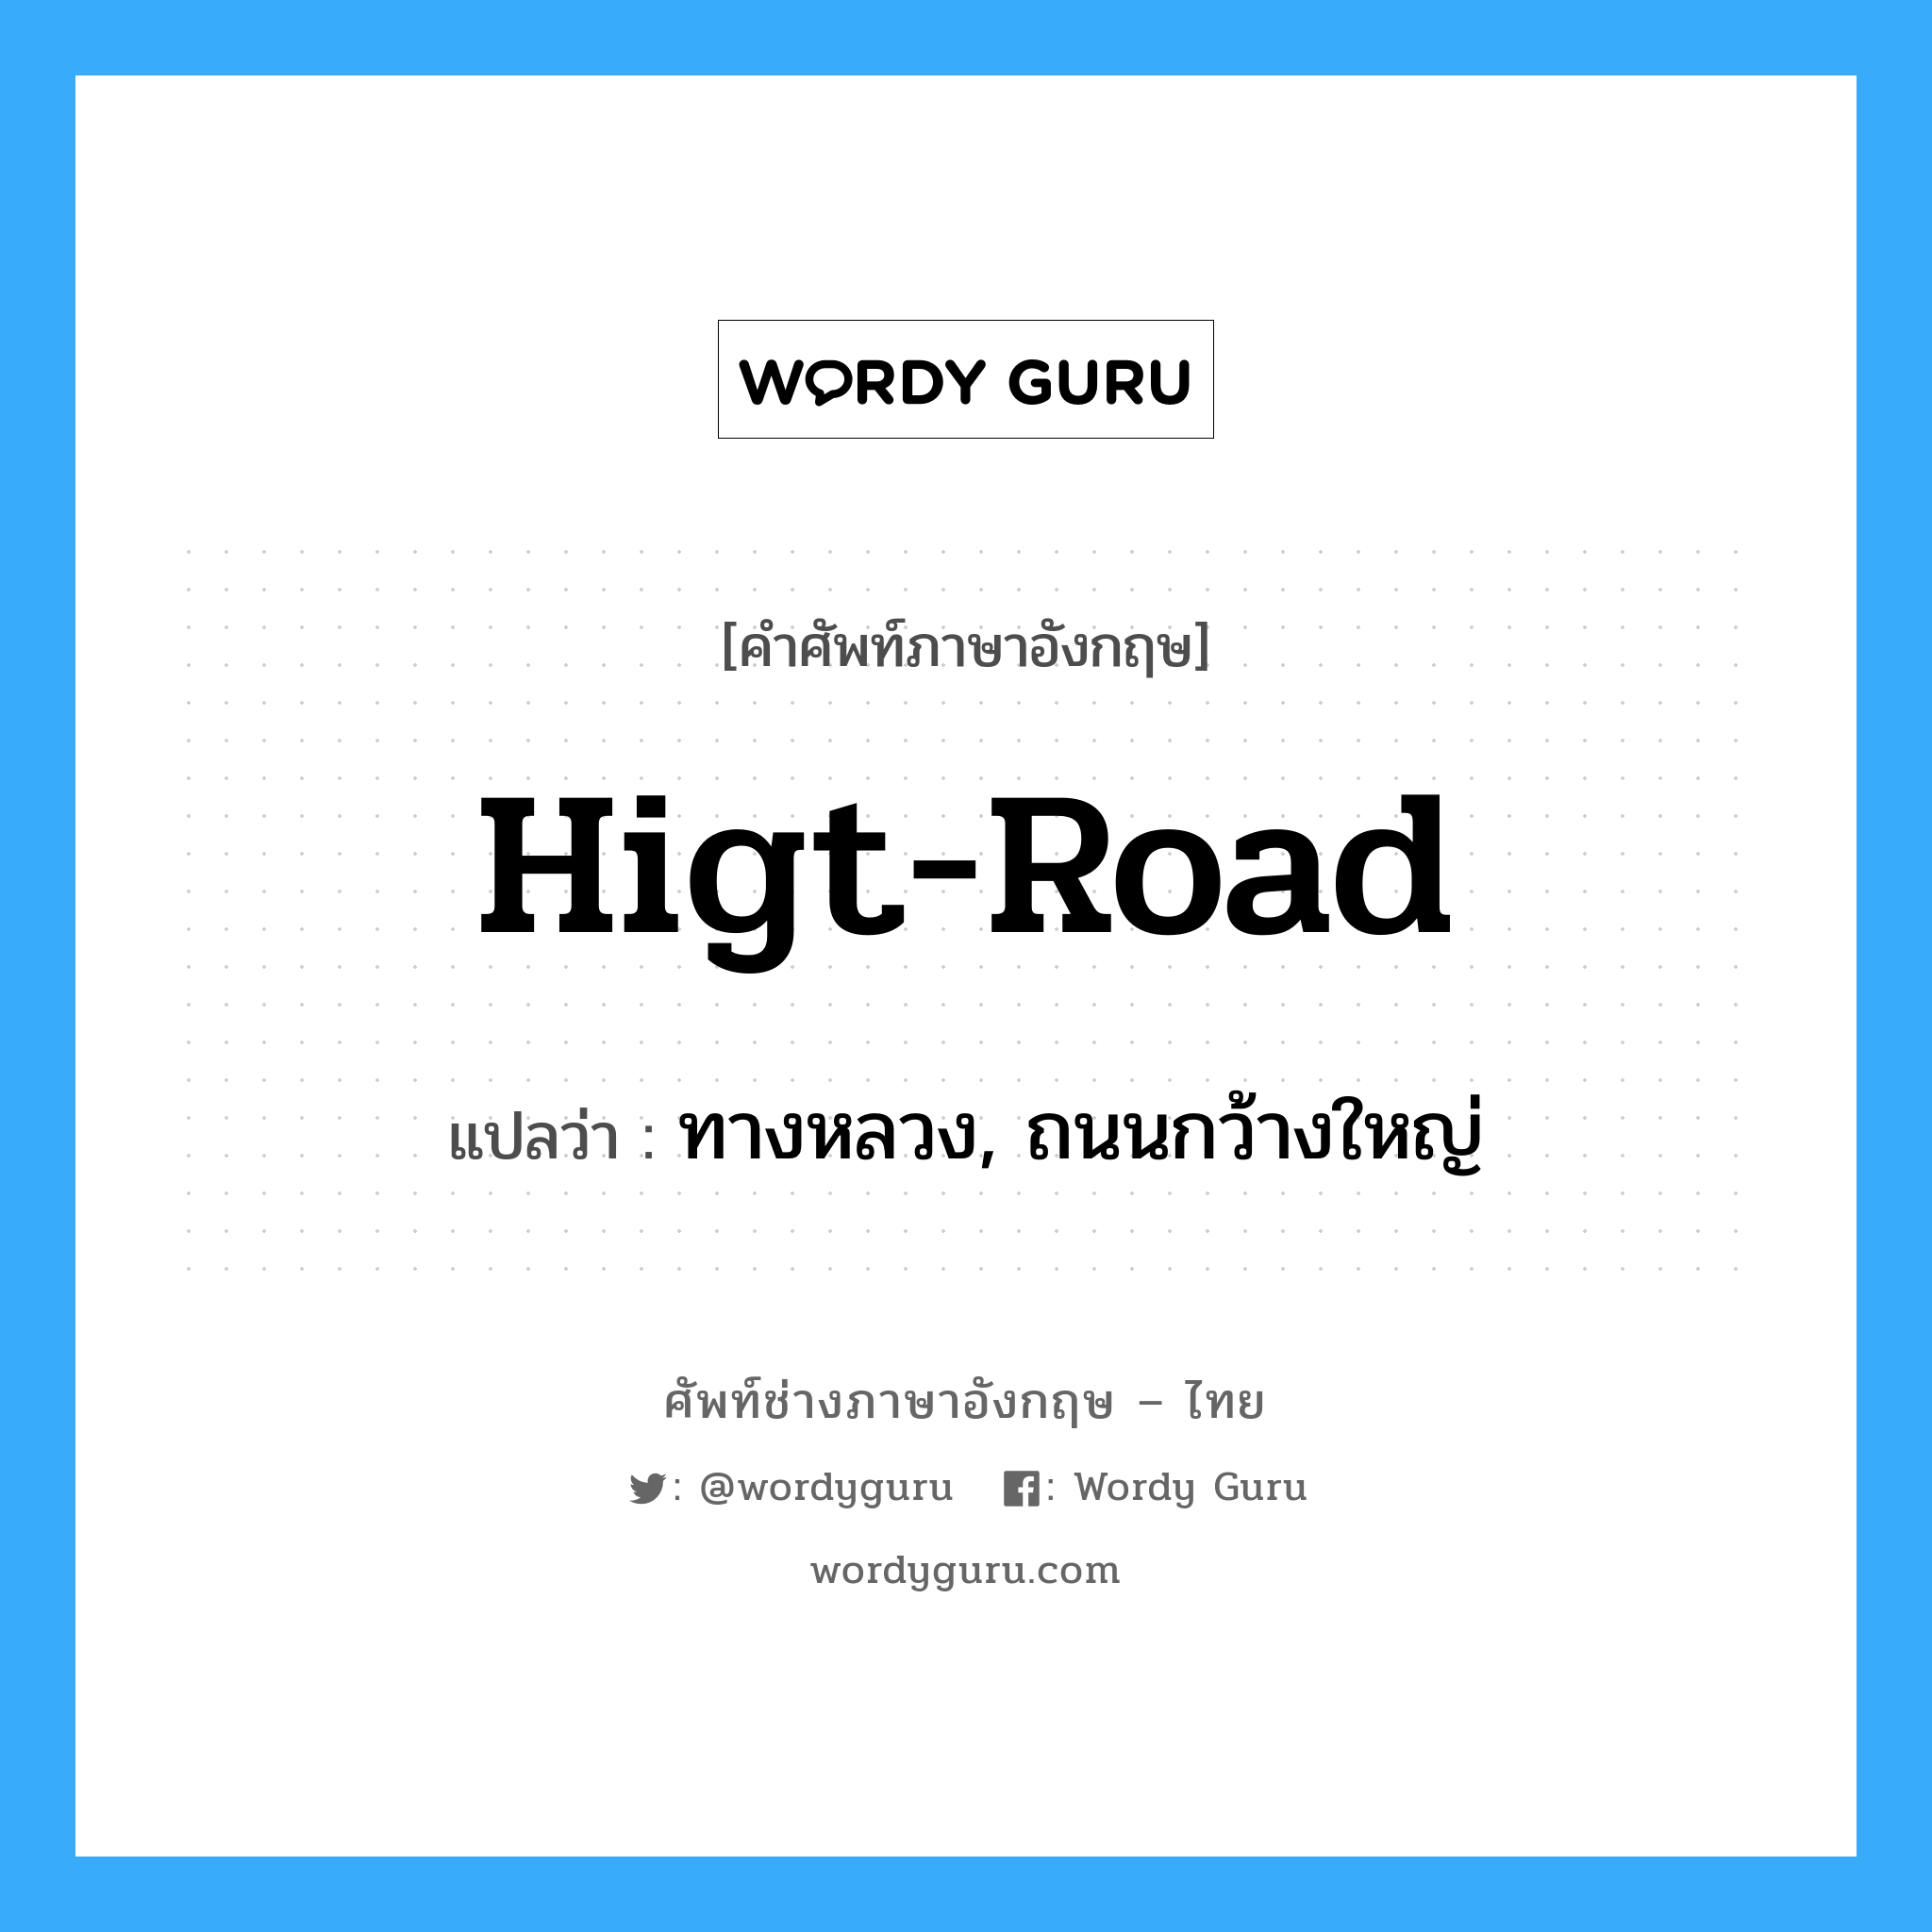 higt-road แปลว่า?, คำศัพท์ช่างภาษาอังกฤษ - ไทย higt-road คำศัพท์ภาษาอังกฤษ higt-road แปลว่า ทางหลวง, ถนนกว้างใหญ่